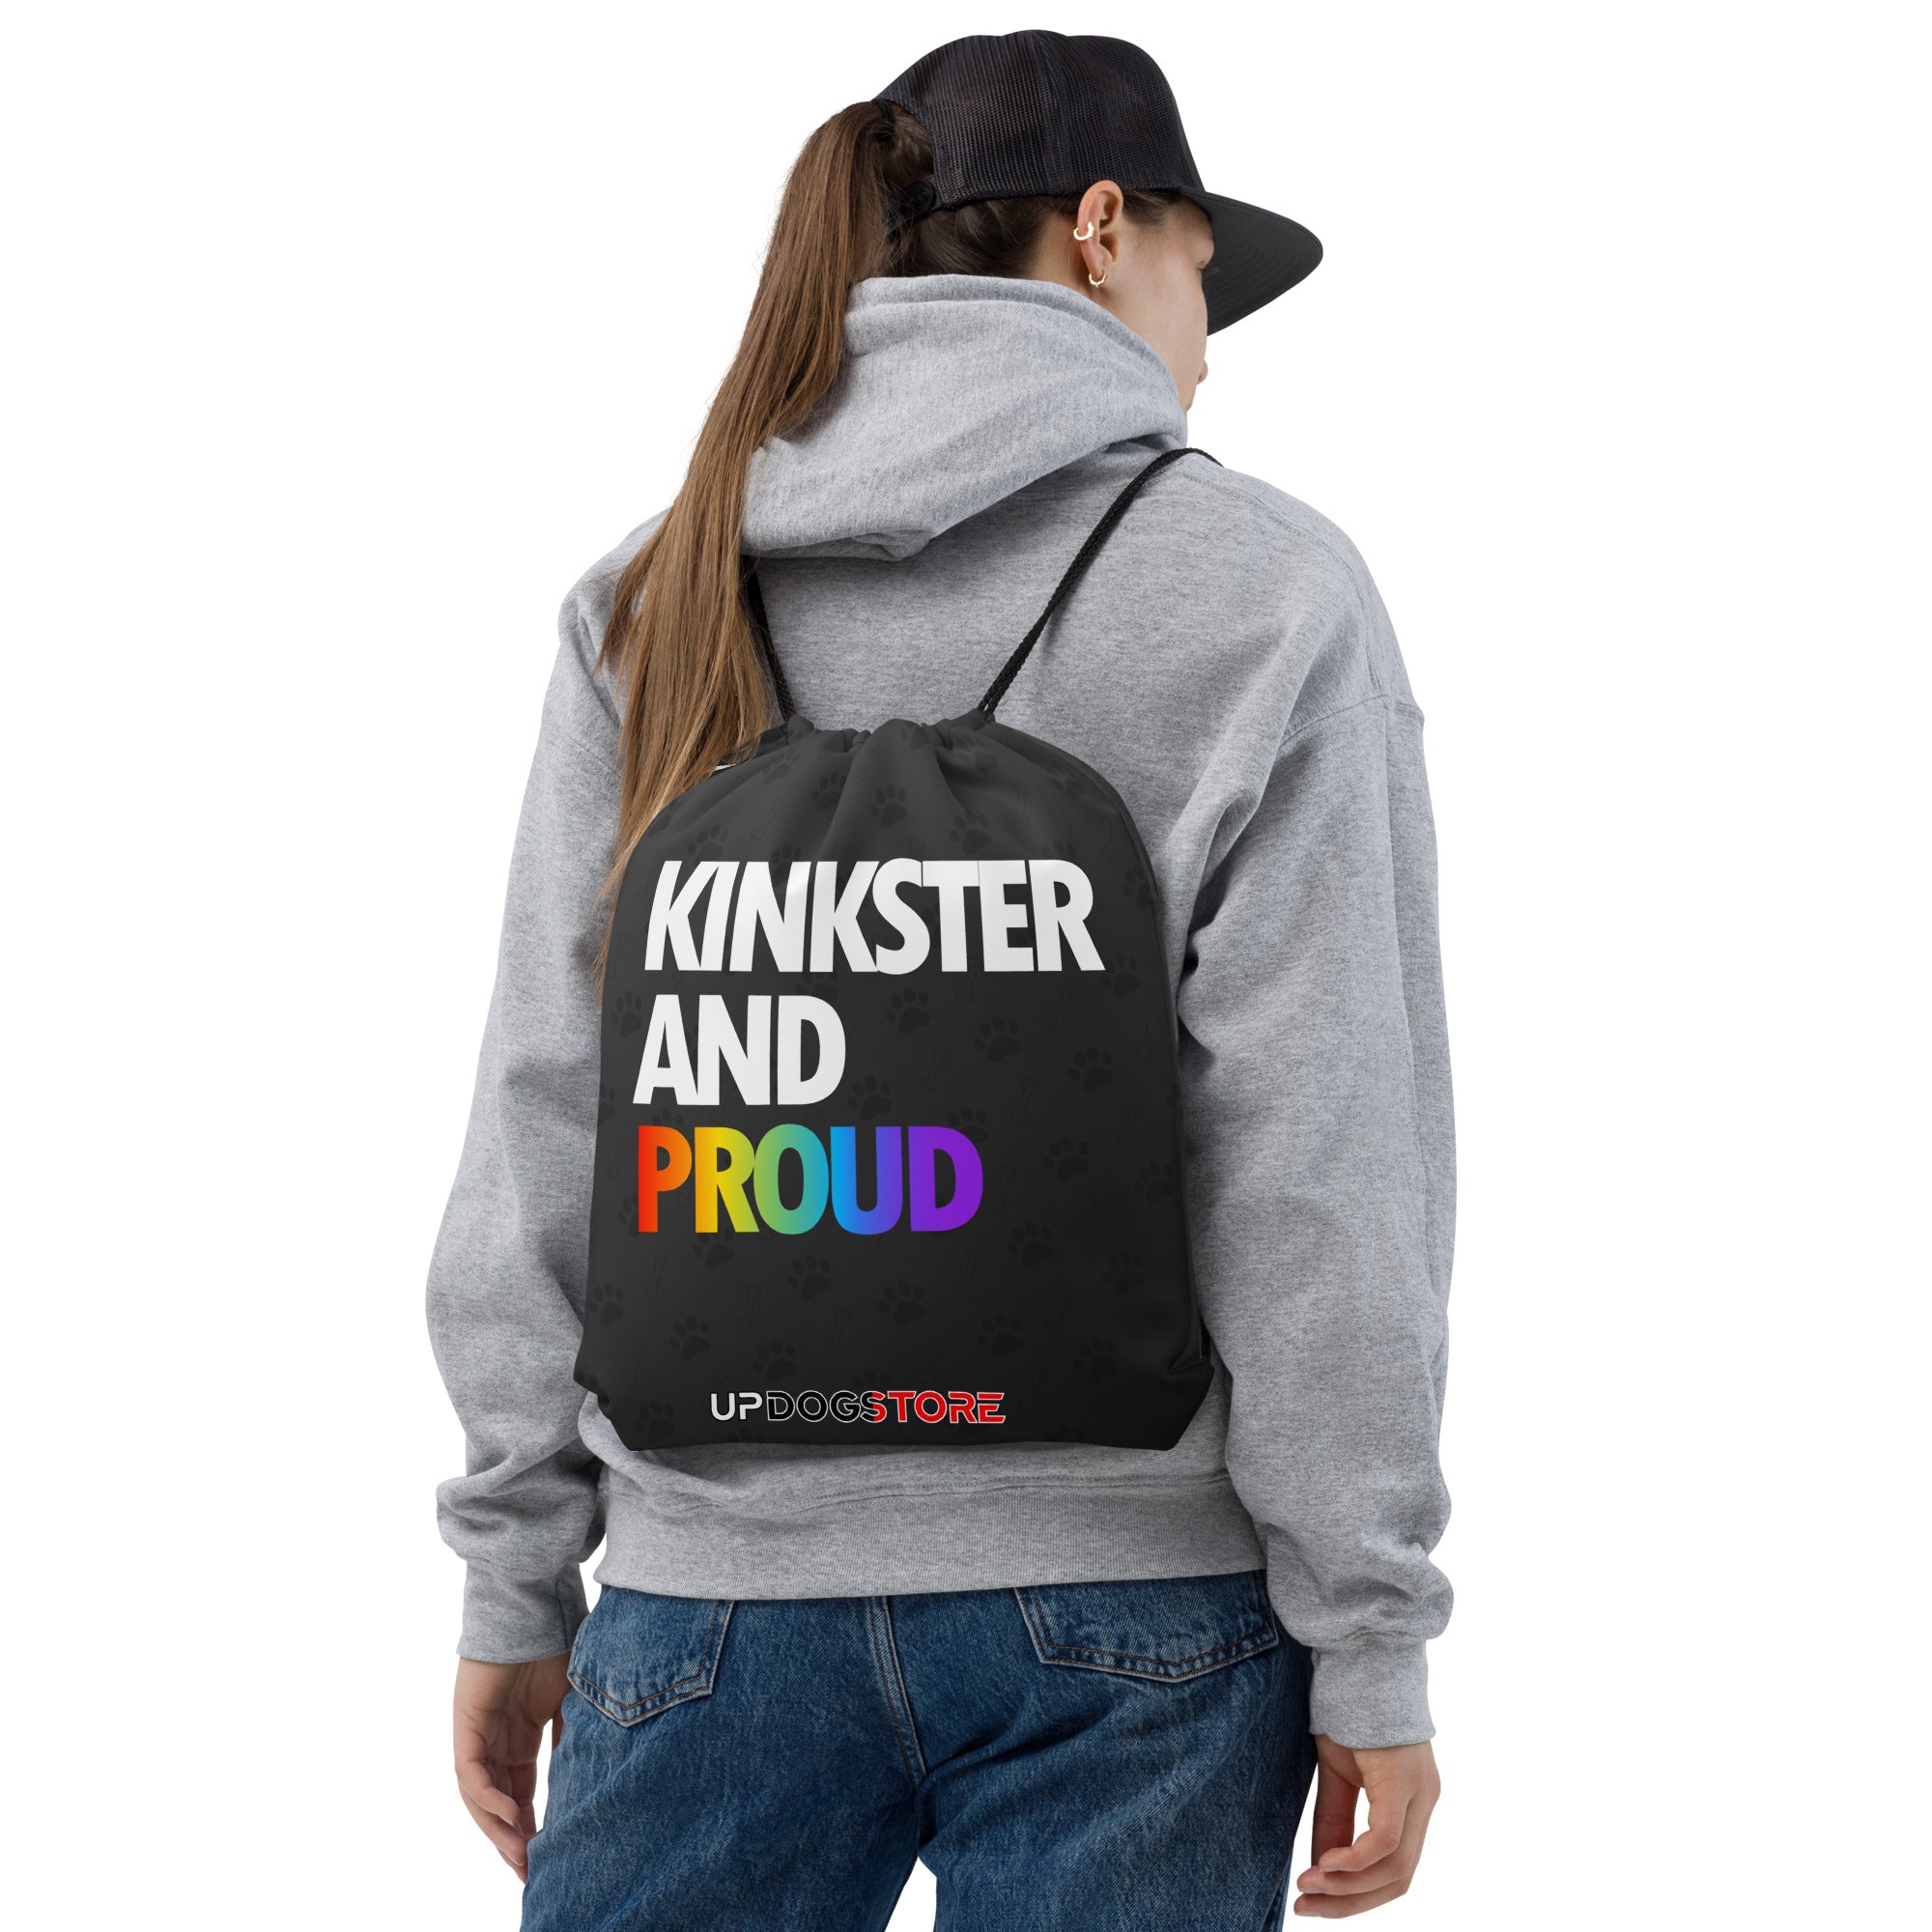 Kinkster and Proud / Bag